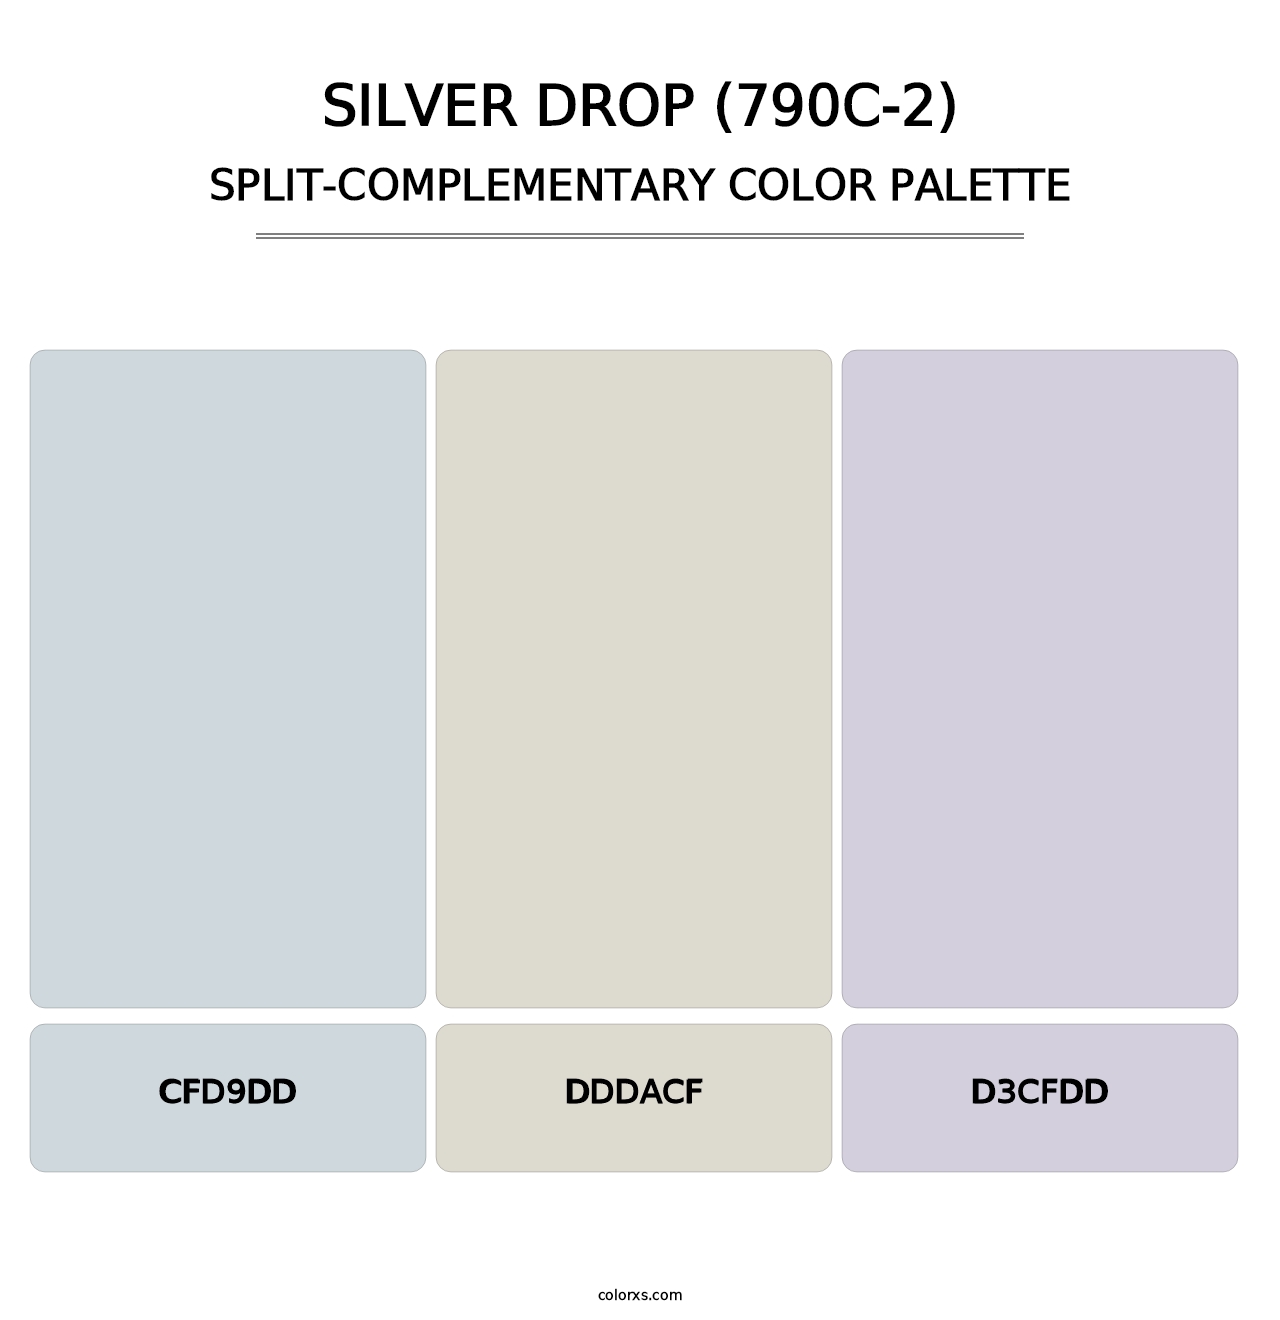 Silver Drop (790C-2) - Split-Complementary Color Palette